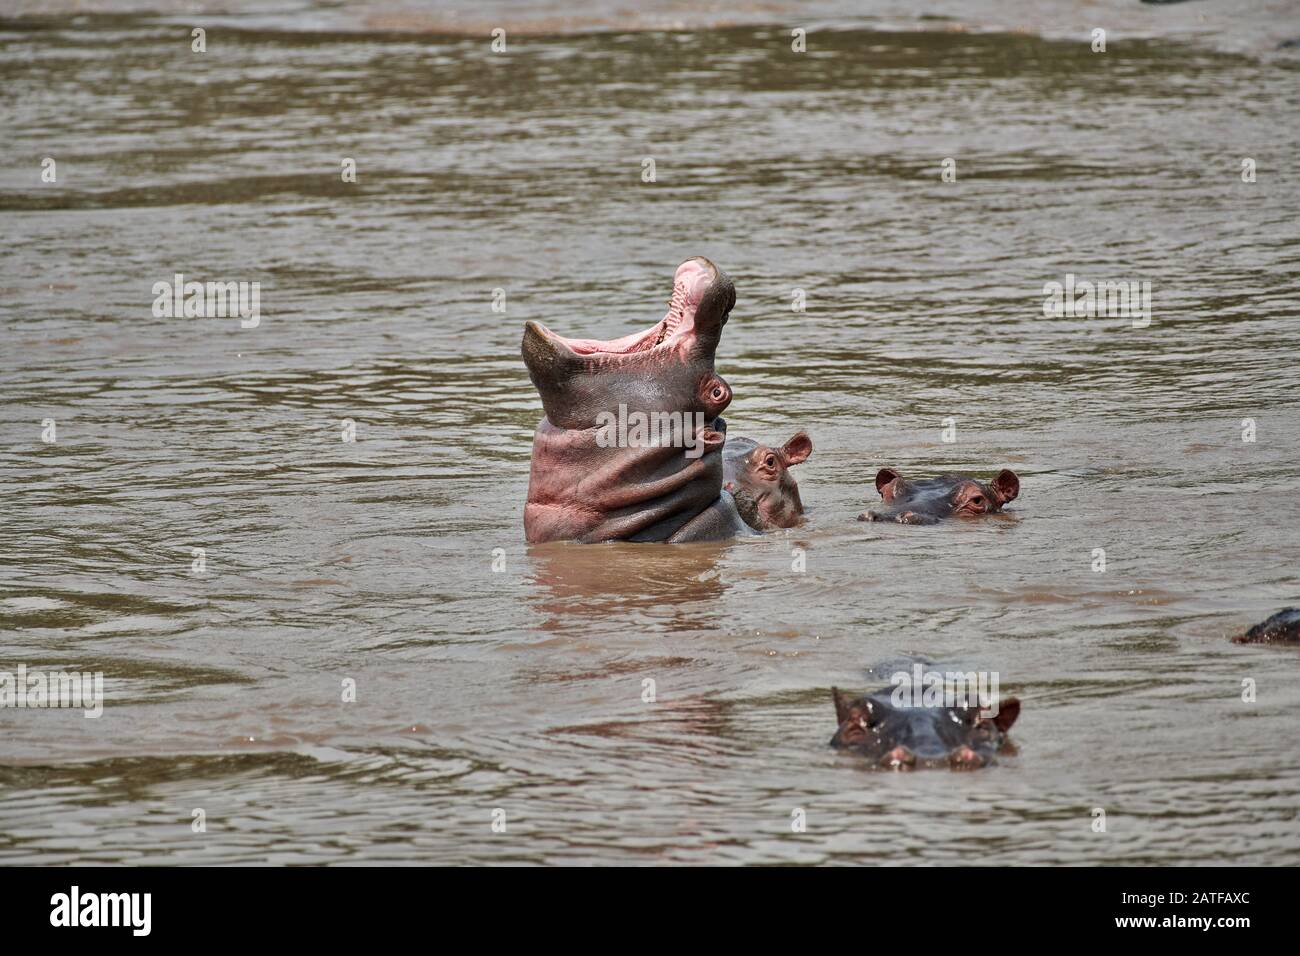 Ippopotamo nascente (Hippopotamus anfibio) nella famosa Hippo-Pool del Serengeti National Park, sito patrimonio dell'umanità dell'UNESCO, Tanzania, Africa Foto Stock